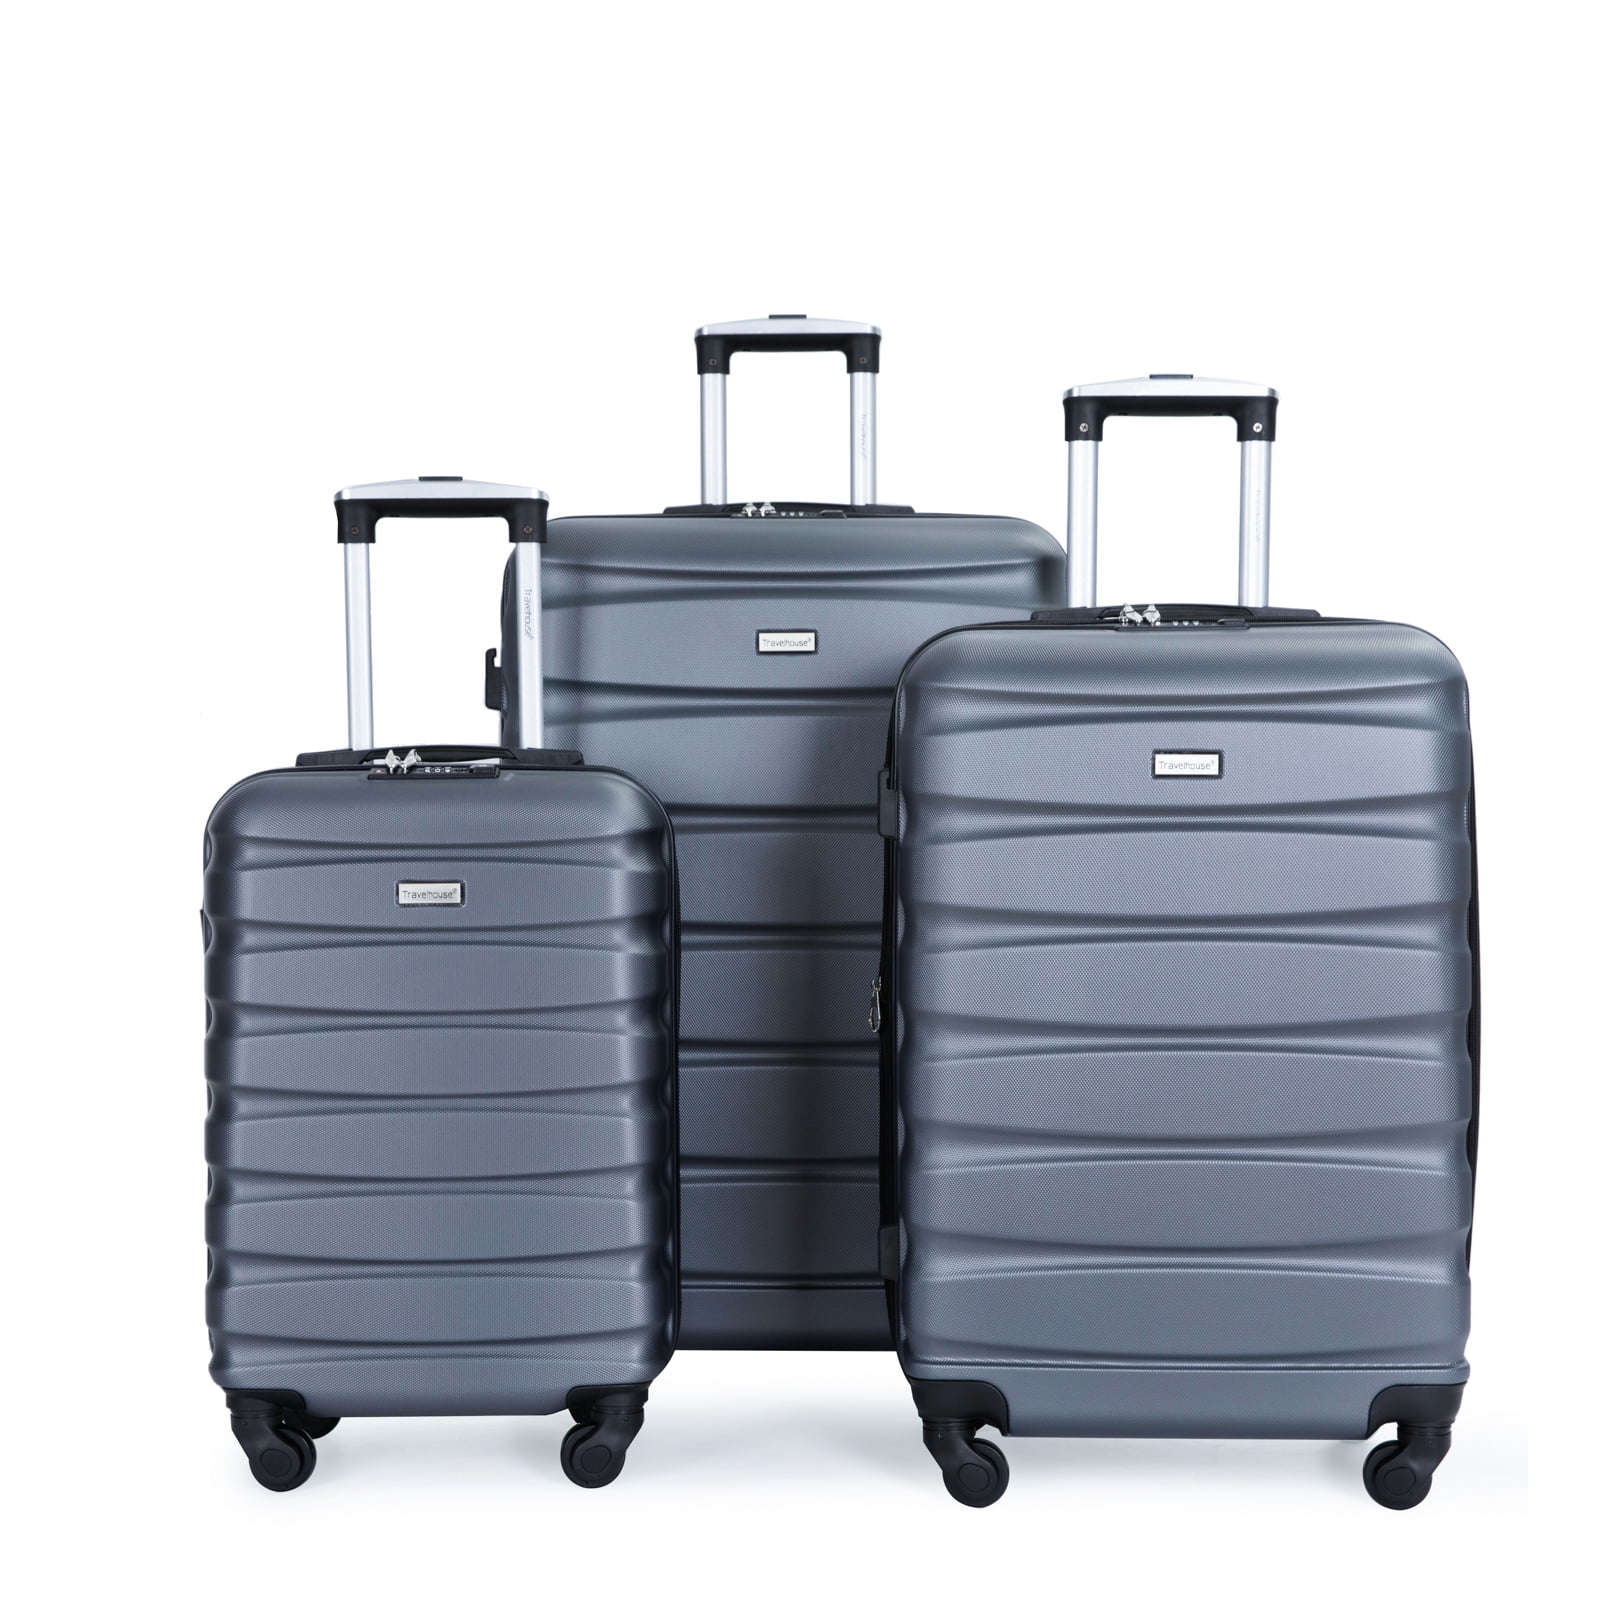 Travelhouse 3 Piece Luggage Set Expandable Hardshell Lightweight ...